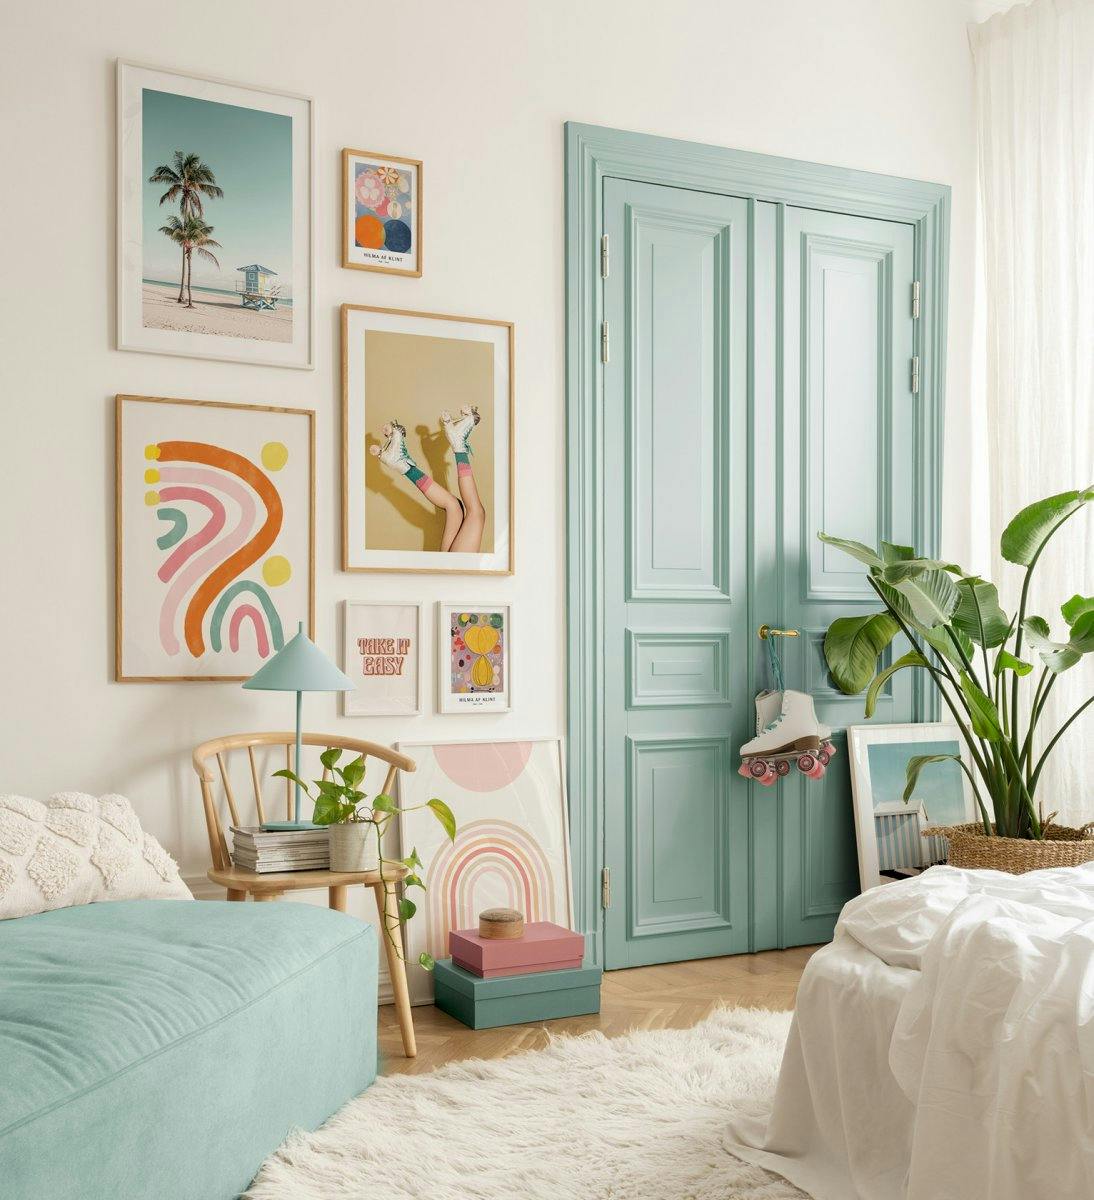 Fotografie und Zutatposter in verspielten Farben für Retro-Vibes im Schlafzimmer oder Wohnzimmer